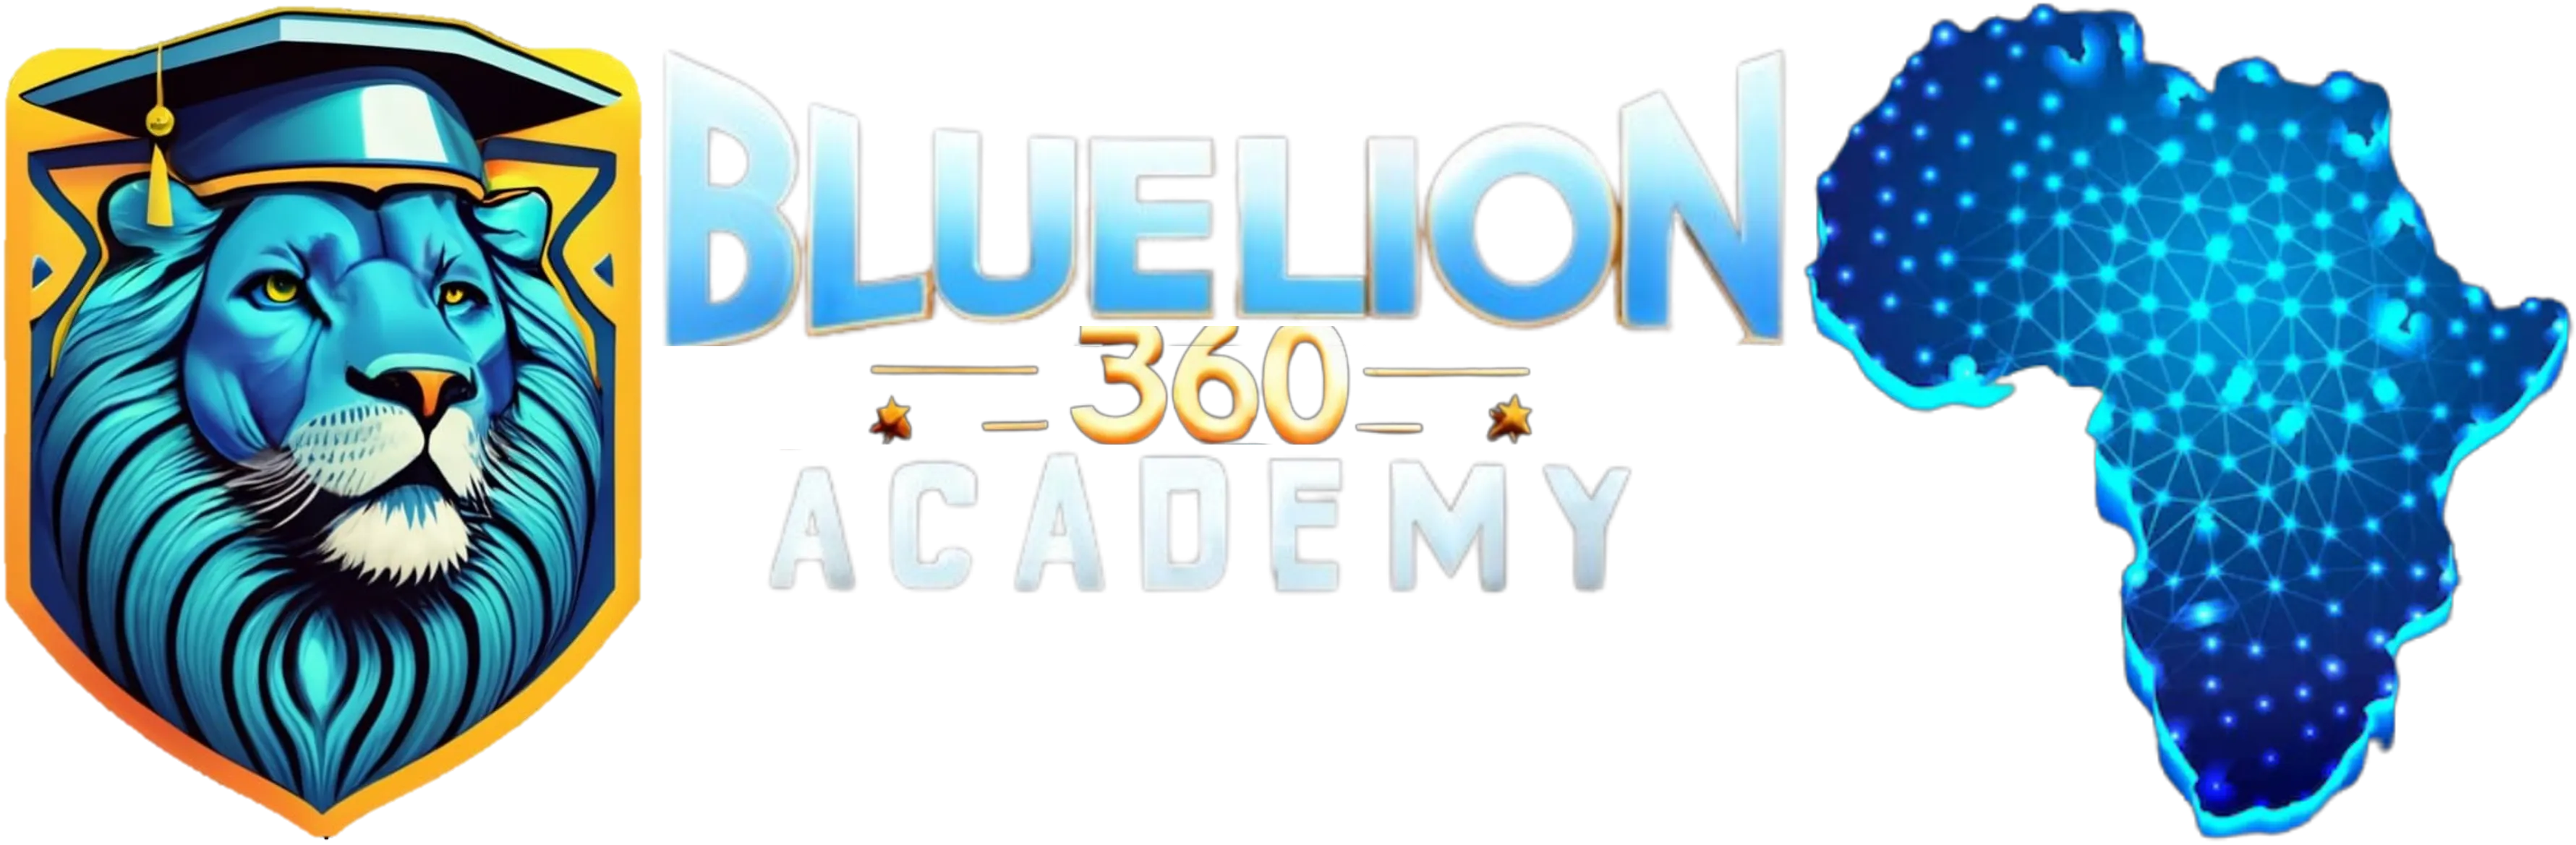 Bluelion 360 Academy Africa